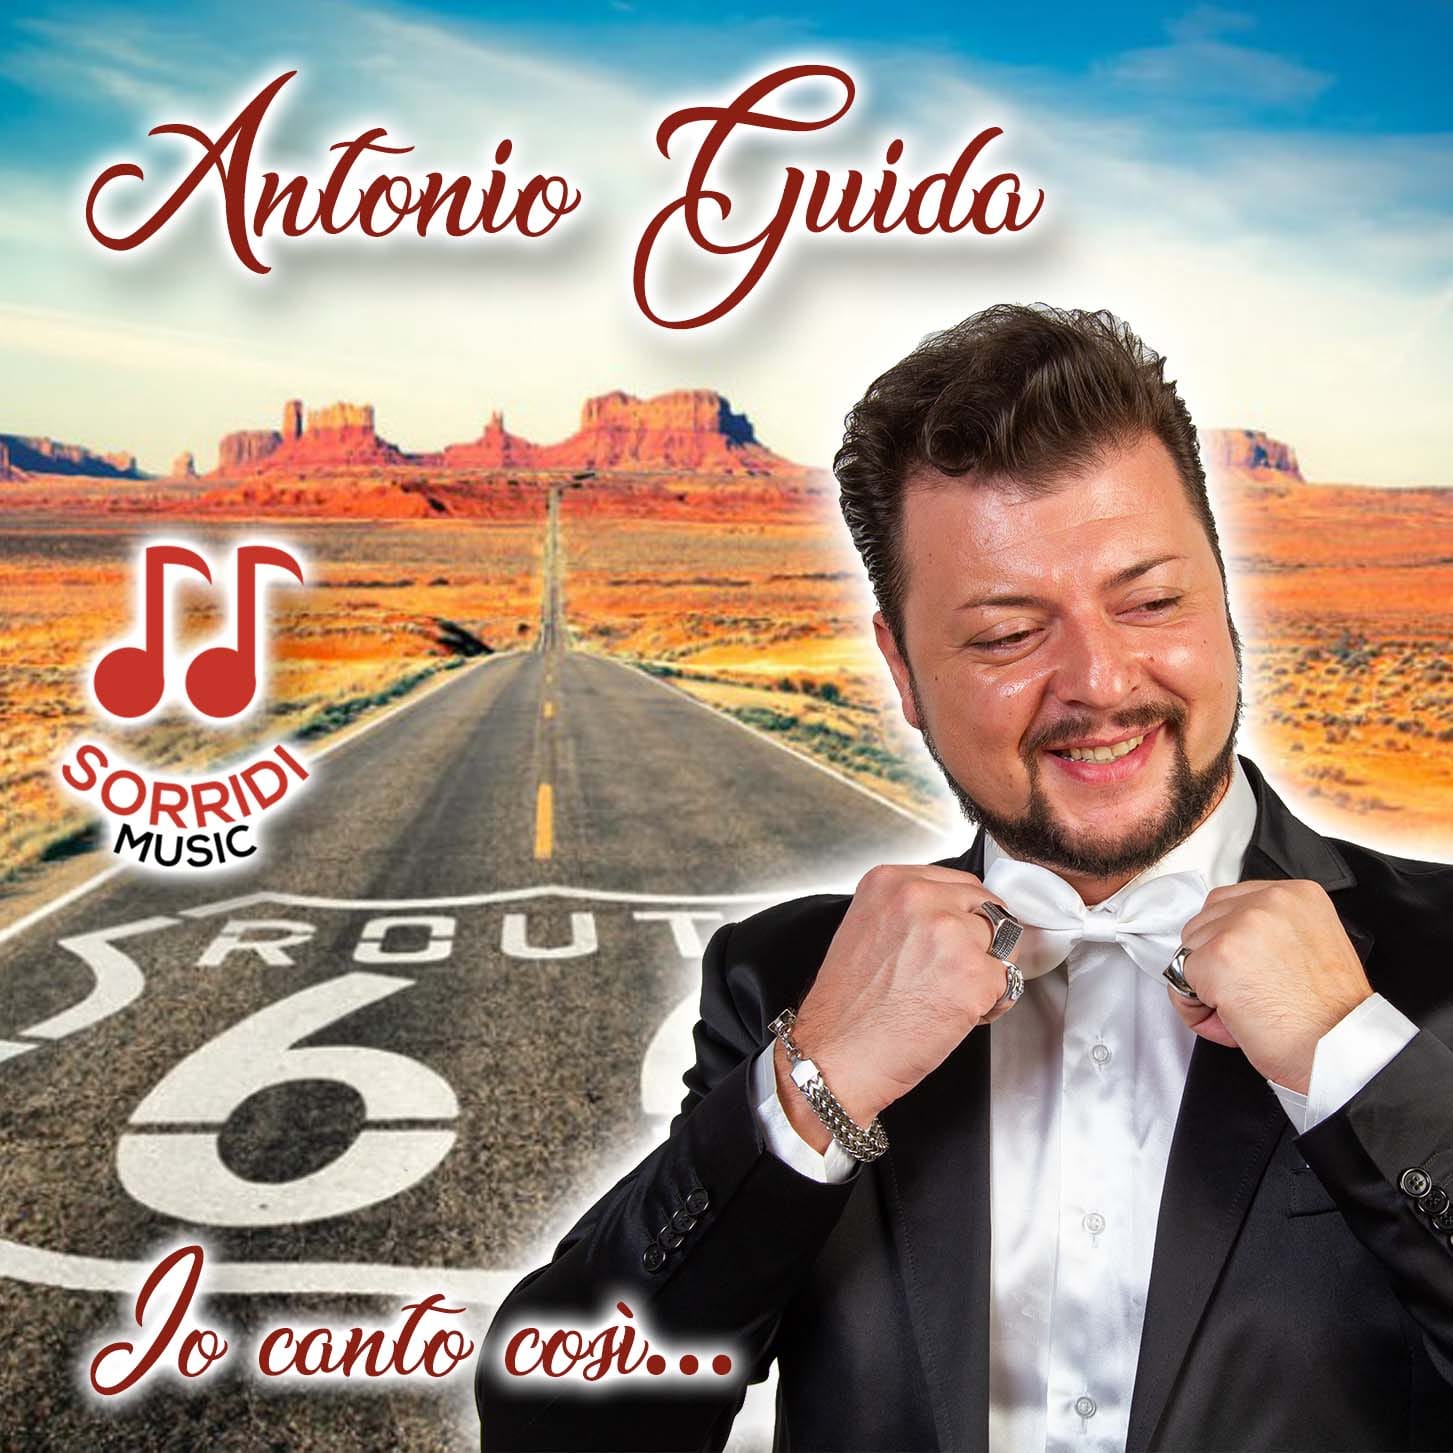  Sorridi Music, l’artista Antonio Guida esordisce con l’EP “Io canto così”